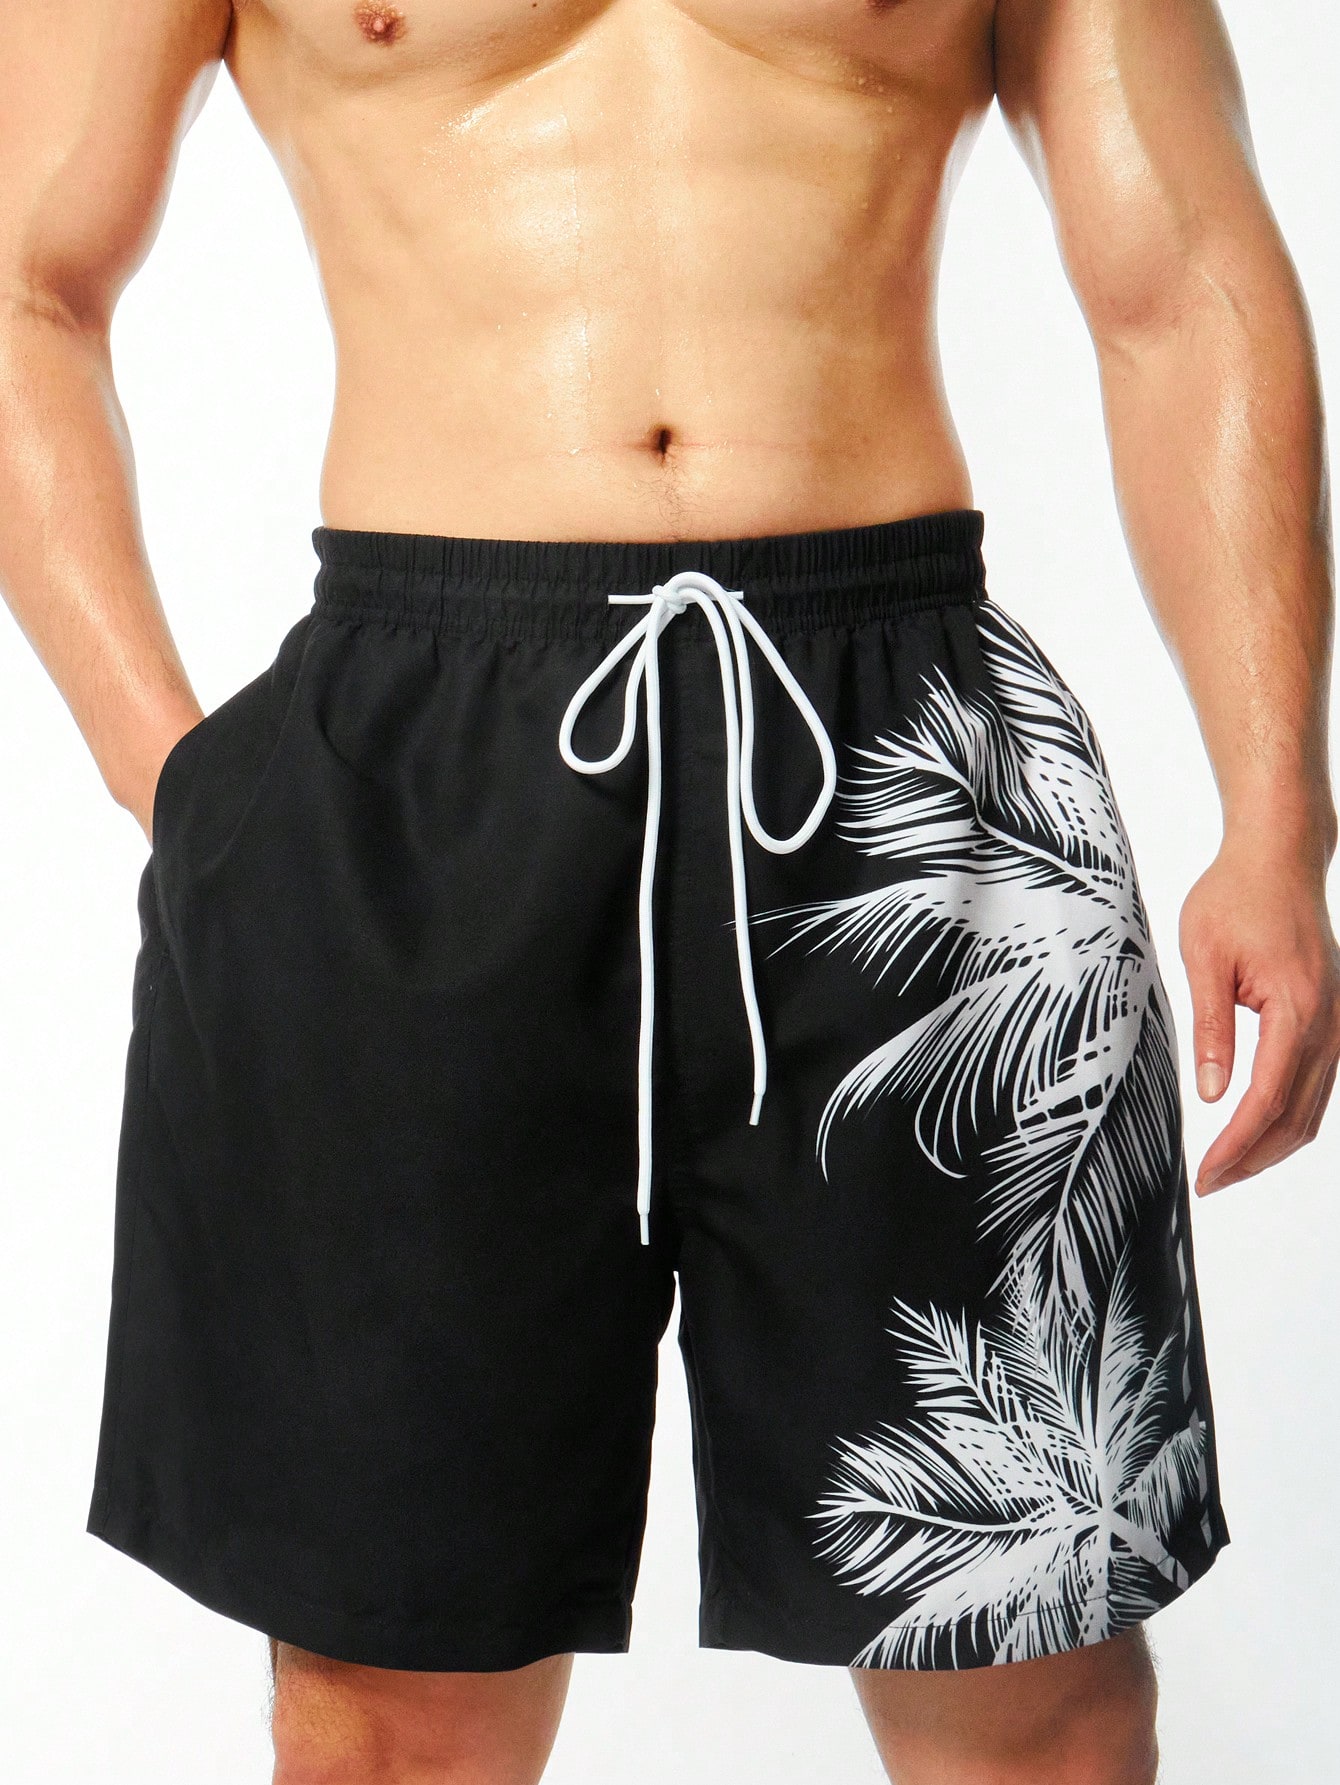 Мужские пляжные шорты Manfinity больших размеров с принтом кокосовой пальмы и завязками на талии, черный